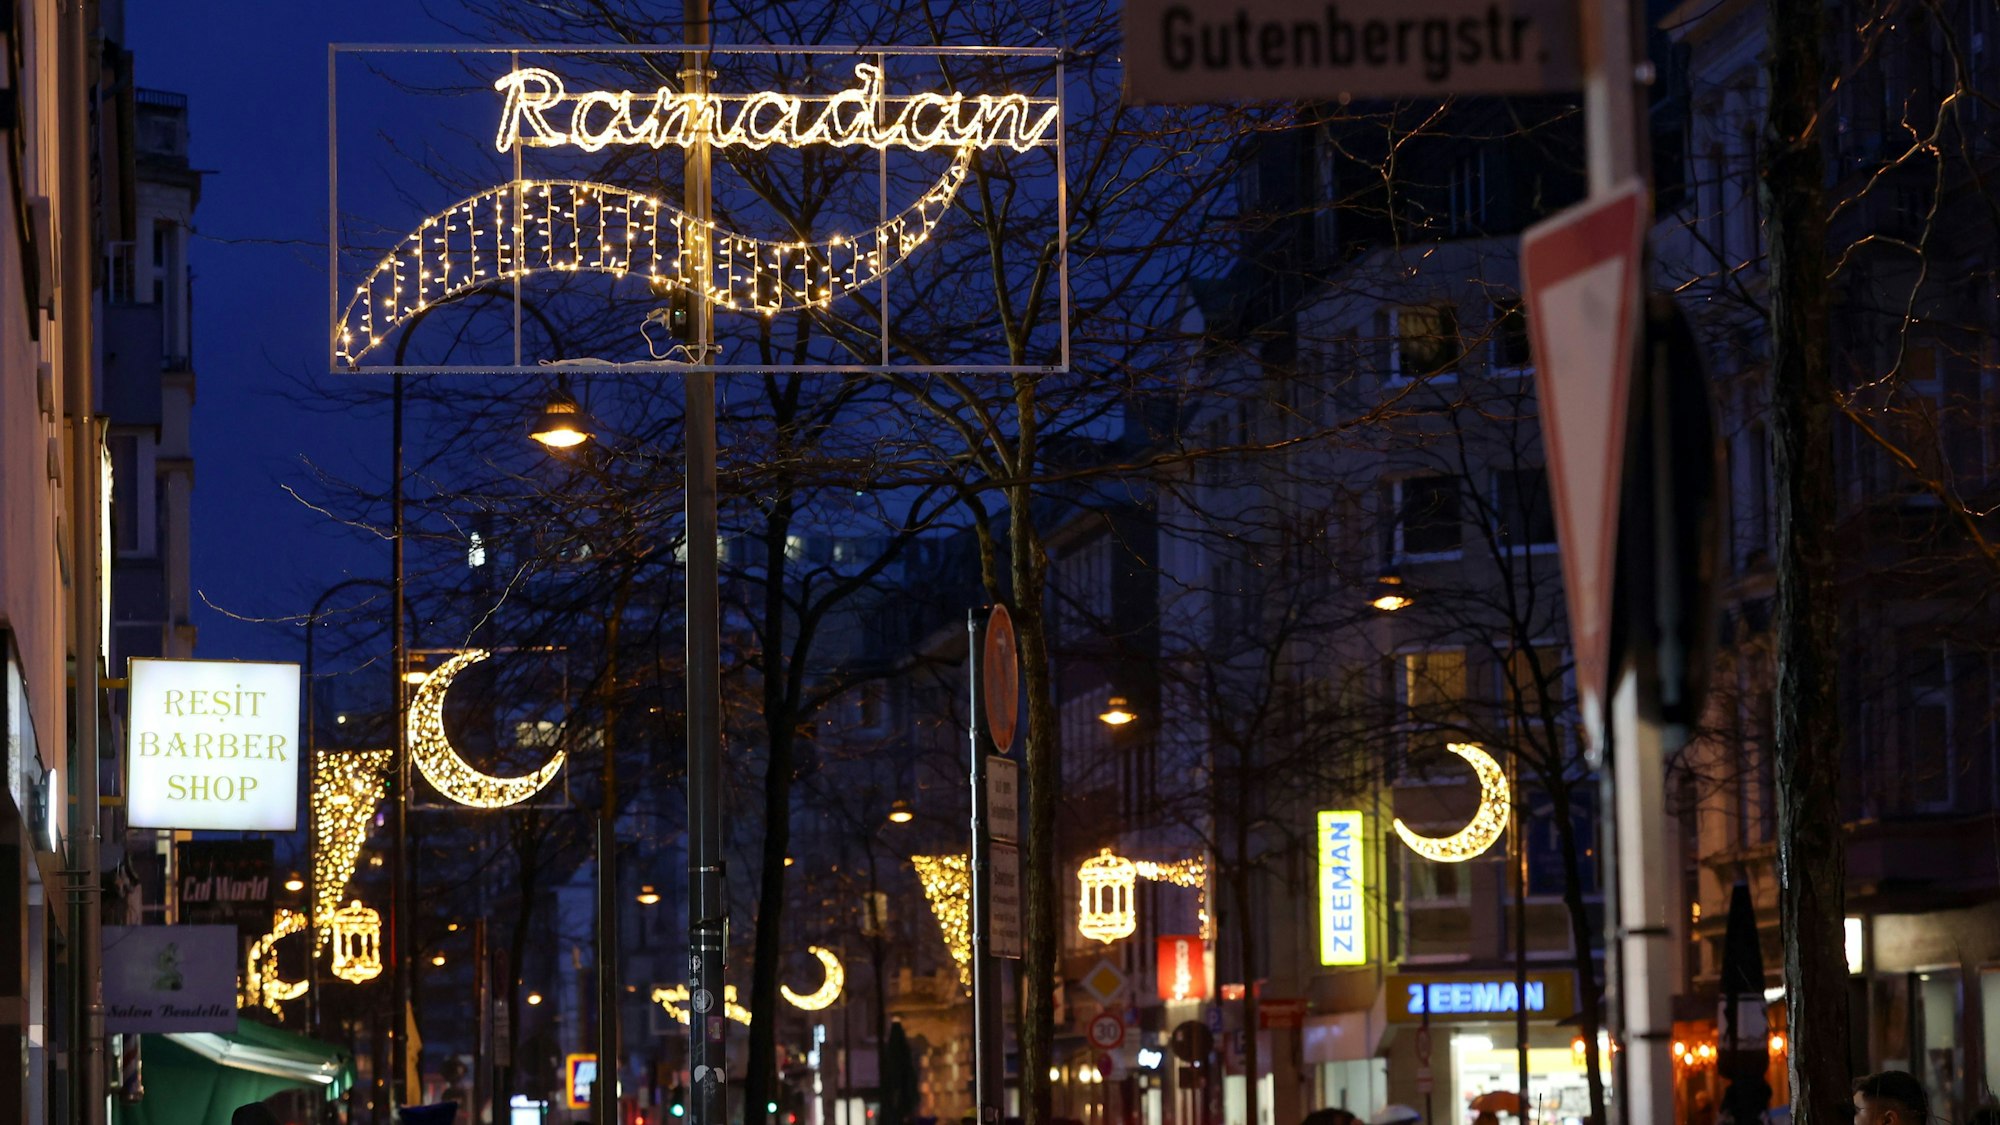 Die Ramadan-Beleuchtung an der Venloer Straße mit Ramadan-Schriftzug und Halbmonden